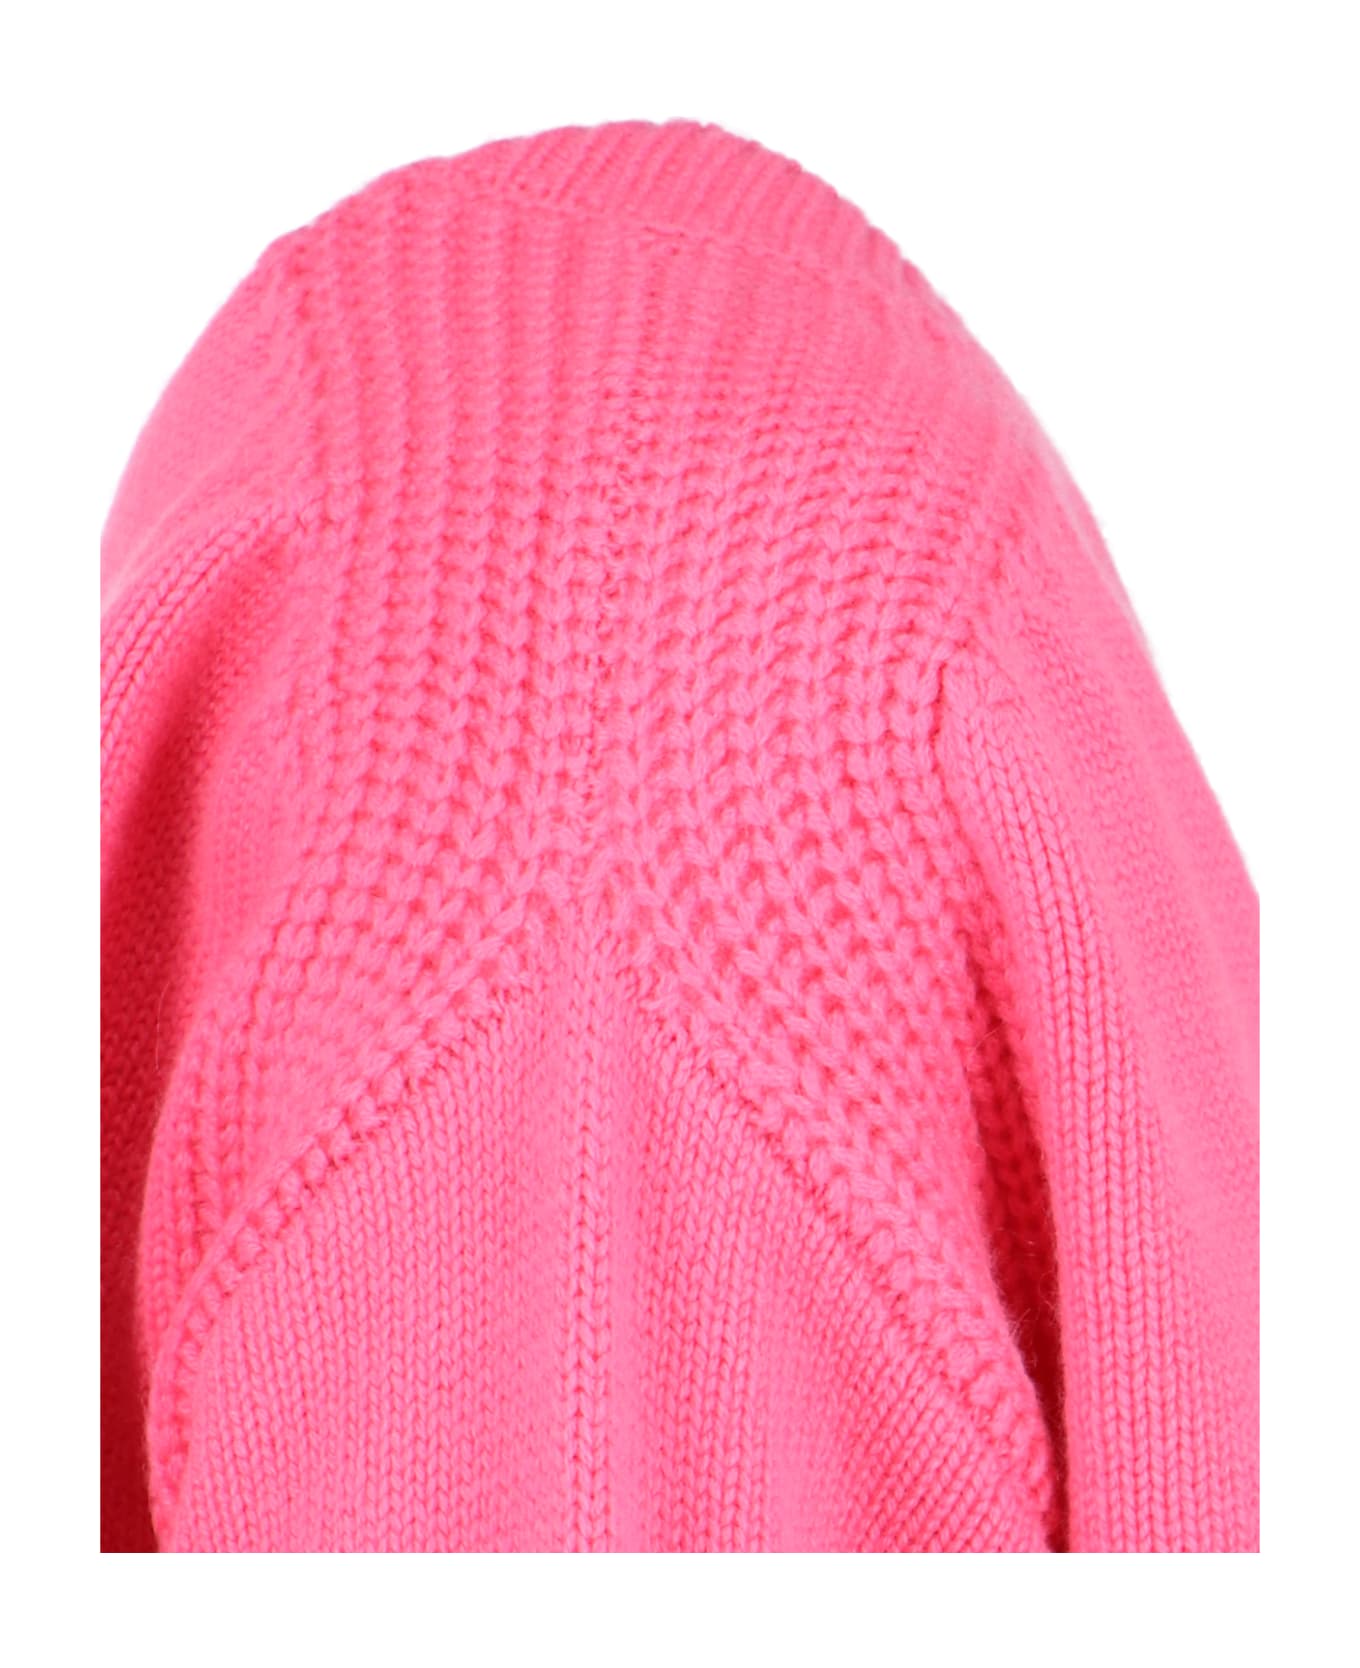 Sa Su Phi Crewneck Sweater - Pink